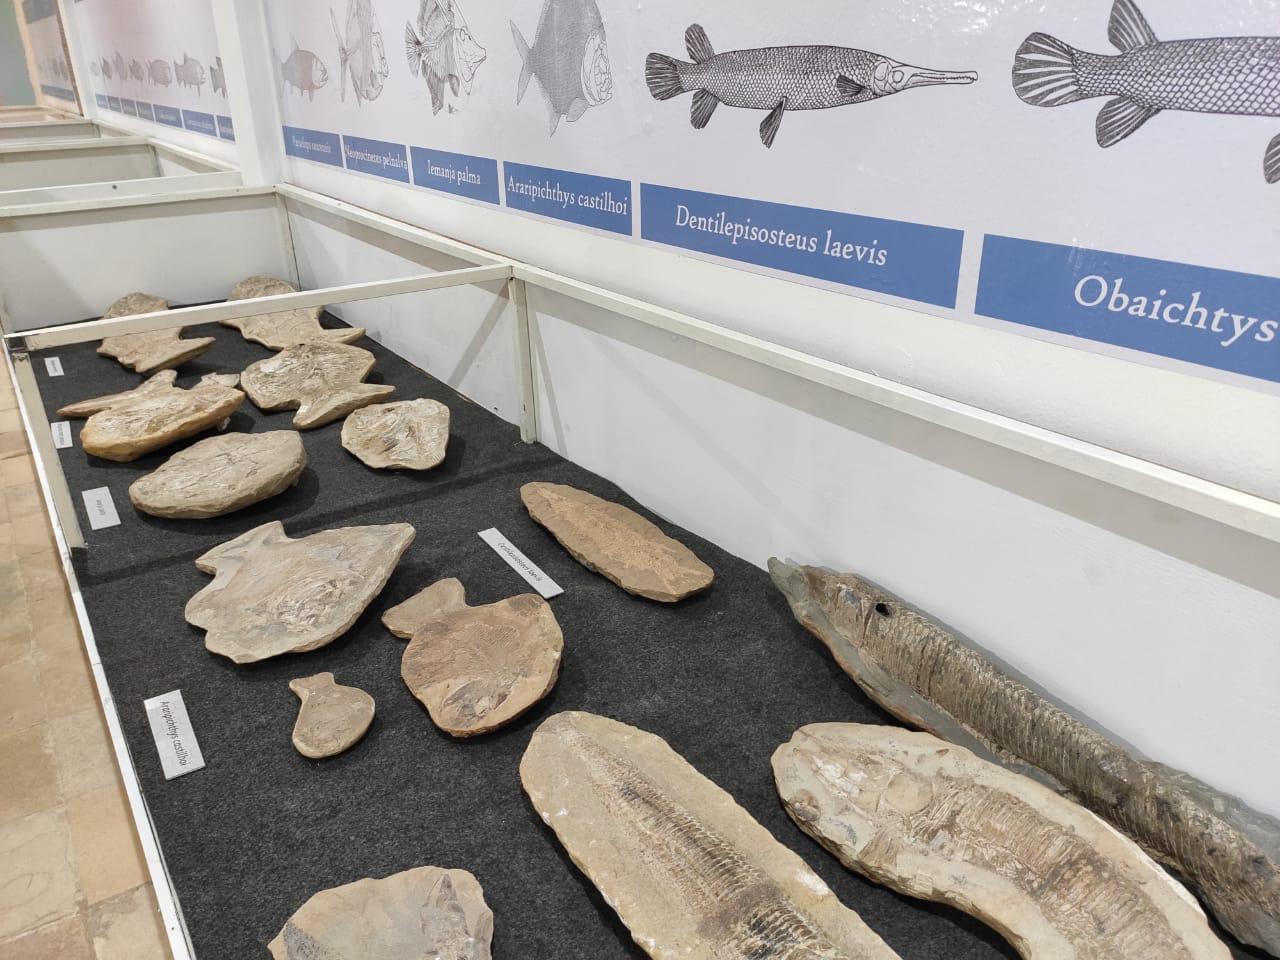 Museu de Paleontologia de Santana do Cariri